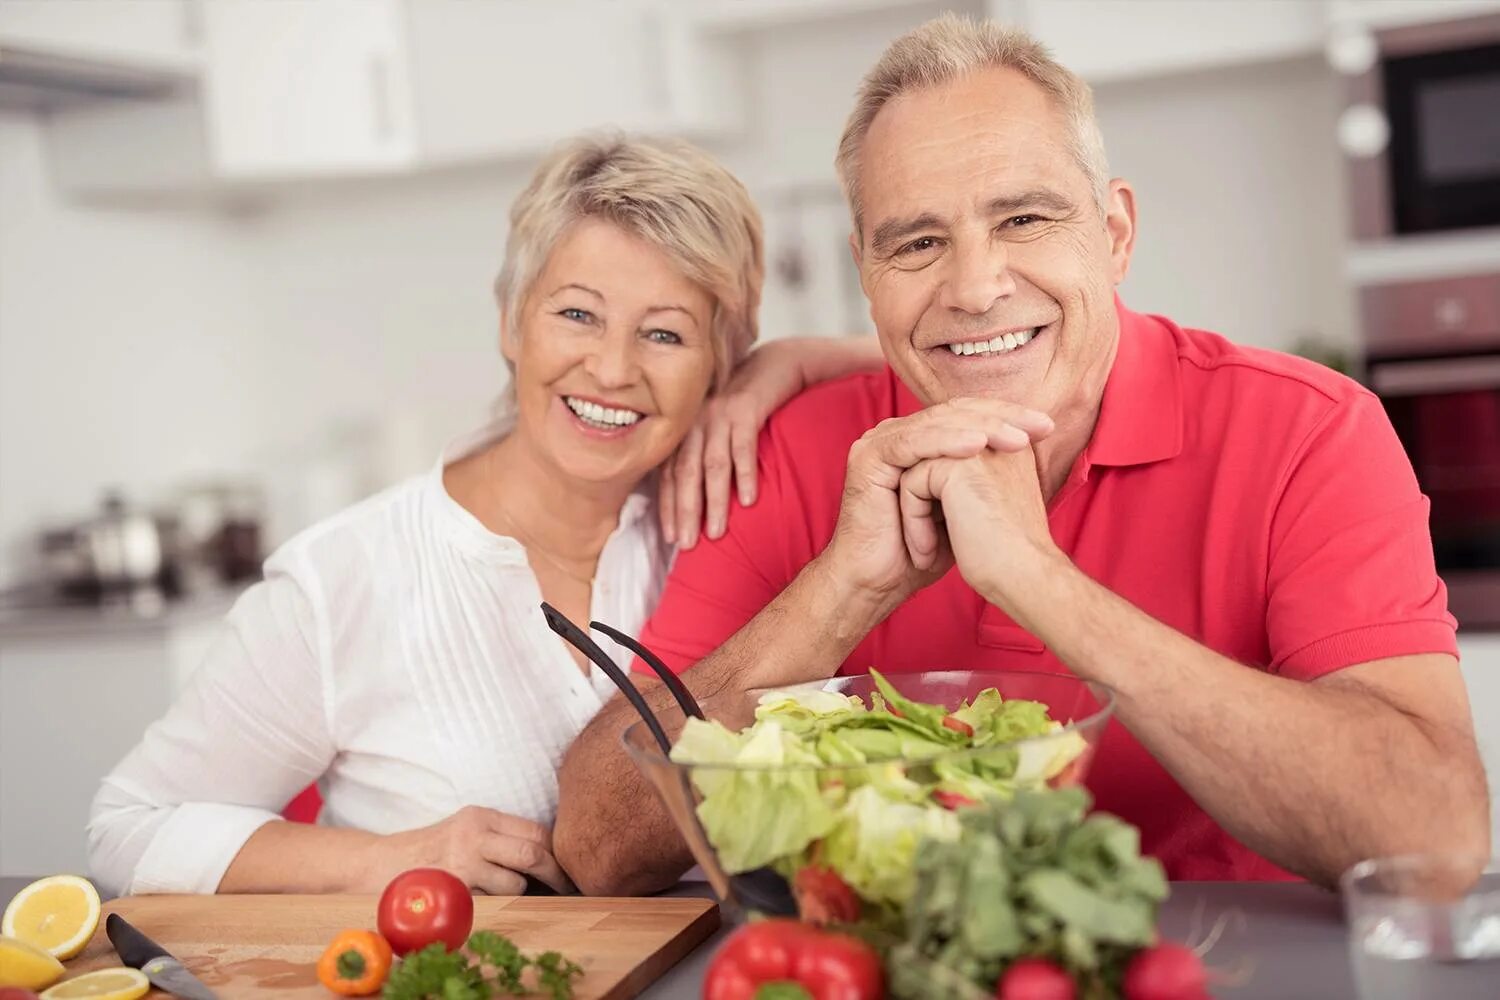 Здоровое питание для пожилых. Правильное питание для пожилых. Пожилые люди. Здоровое питание в зрелом возрасте. Старше пятидесяти лет